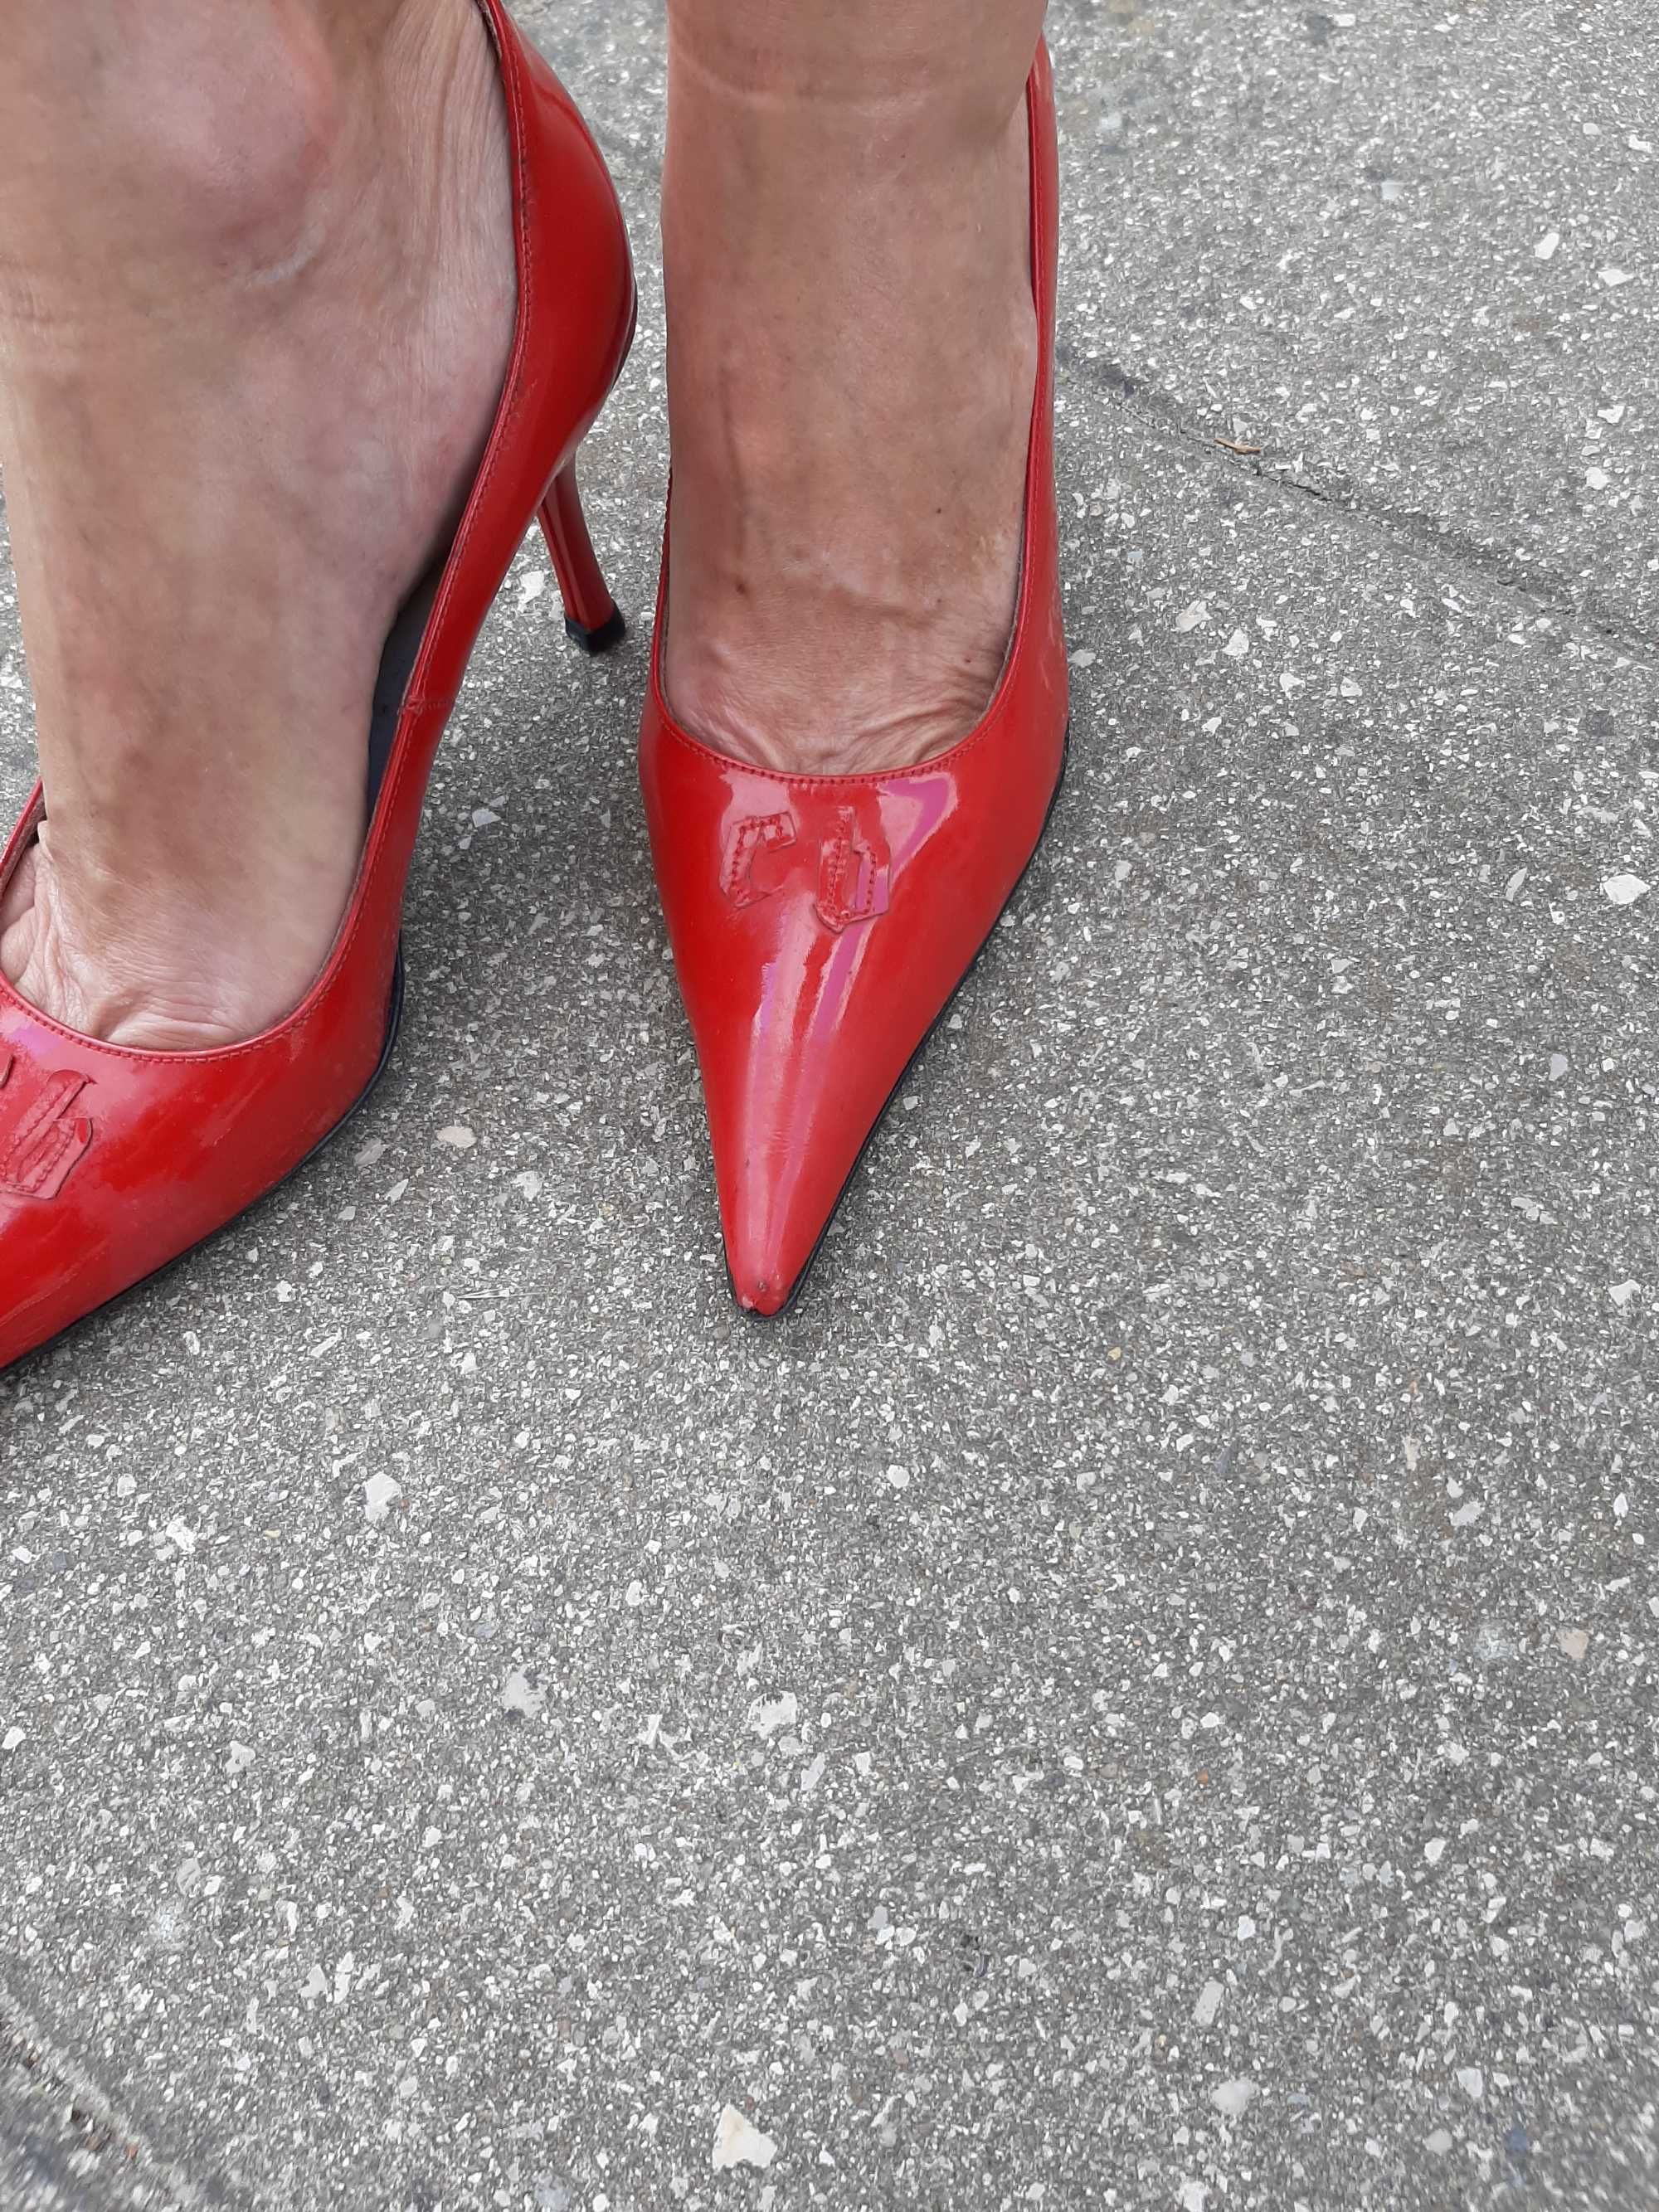 Sapatos Vermelhos Clássicos - Paulo Cravo e Nuno Baltazar